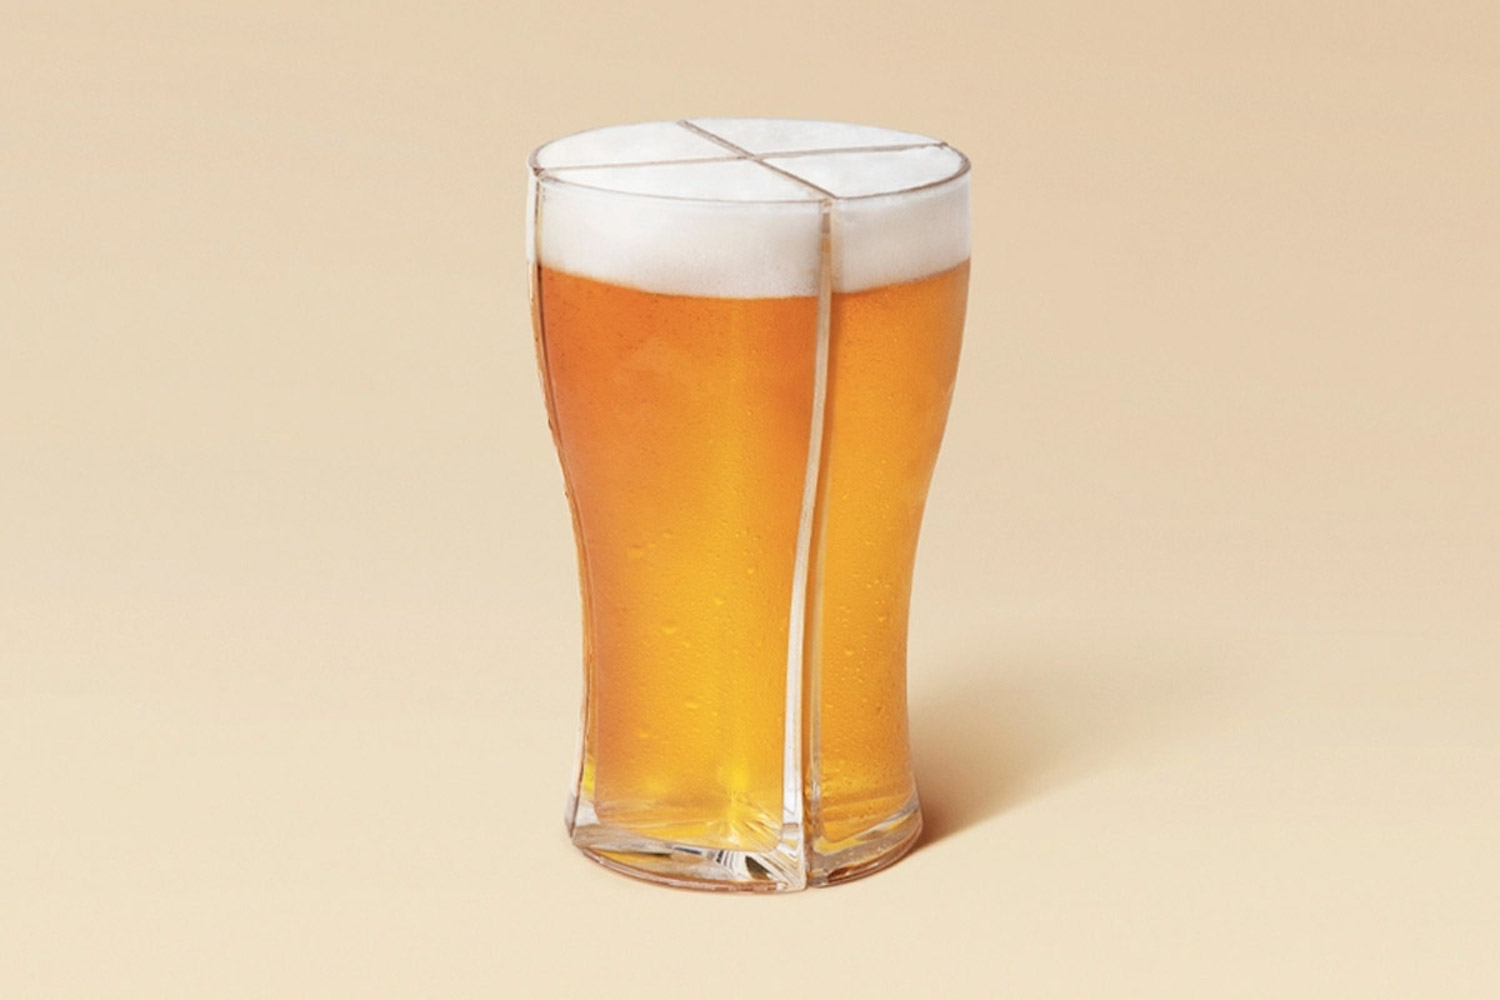 Le verre Super schooner : un design de verre intelligent pour porter facilement 4 bières en même temps